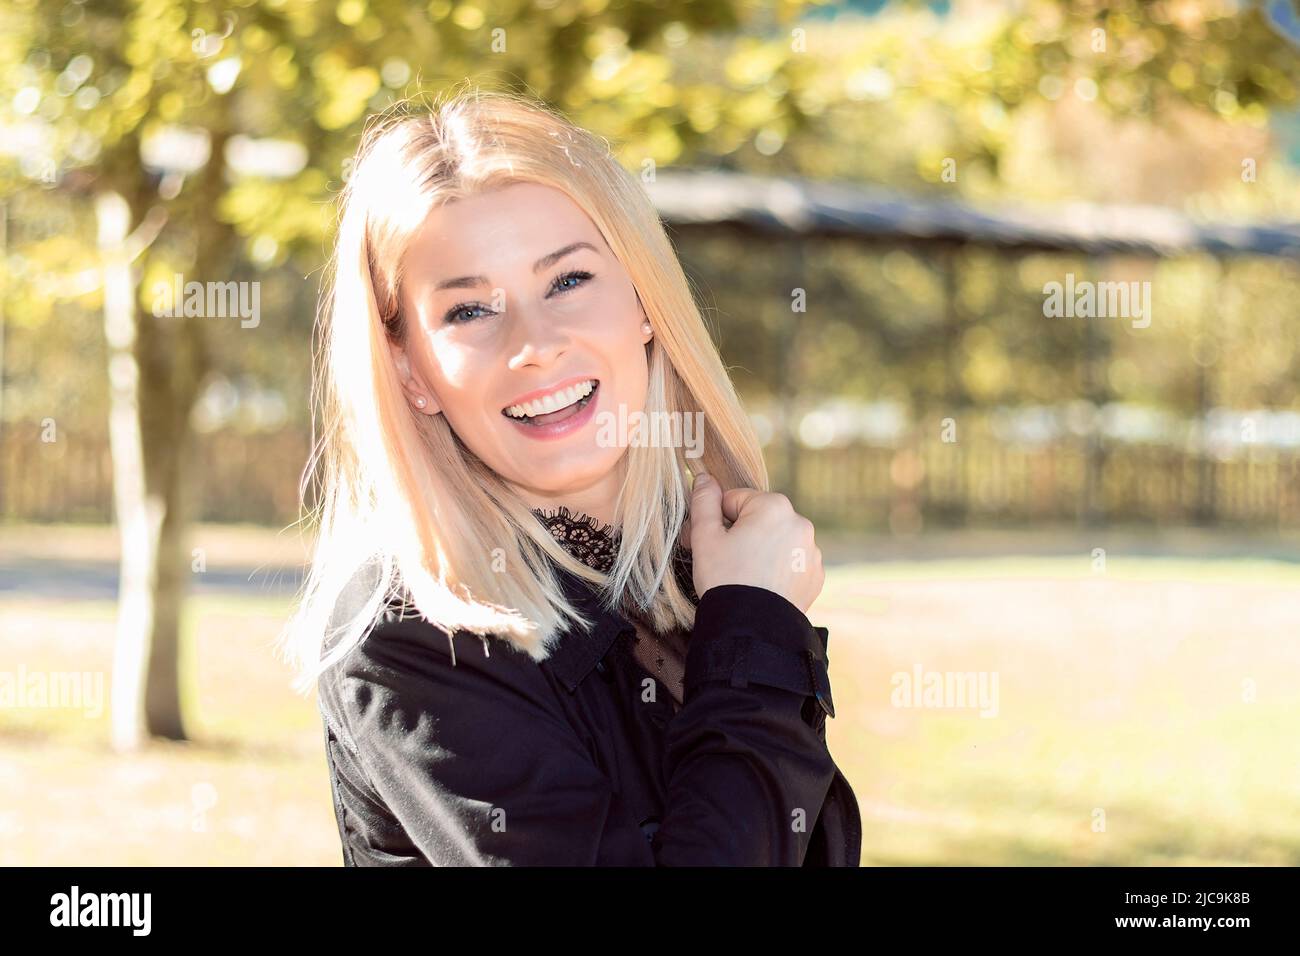 jolie femme blonde souriante dans un parc habillé de noir Banque D'Images